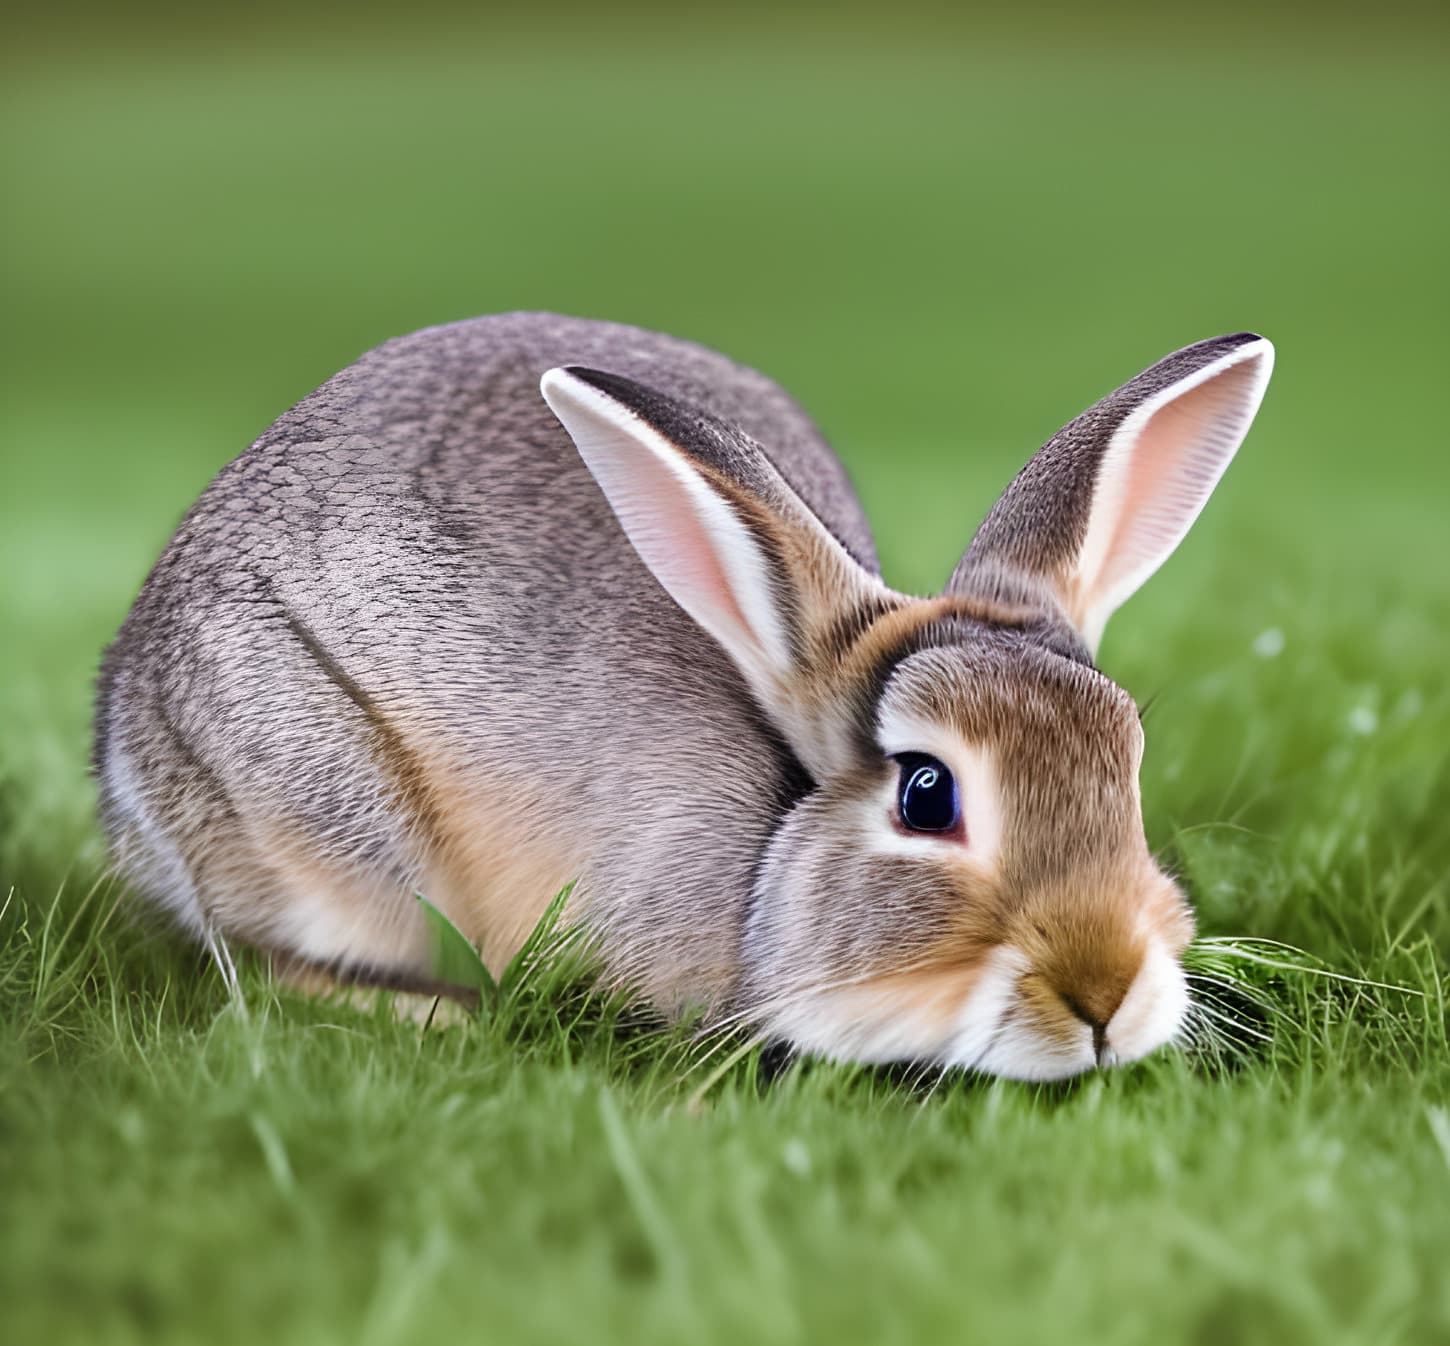 simpatičan zec izbliza na zelenom travnjaku, glodar na travi